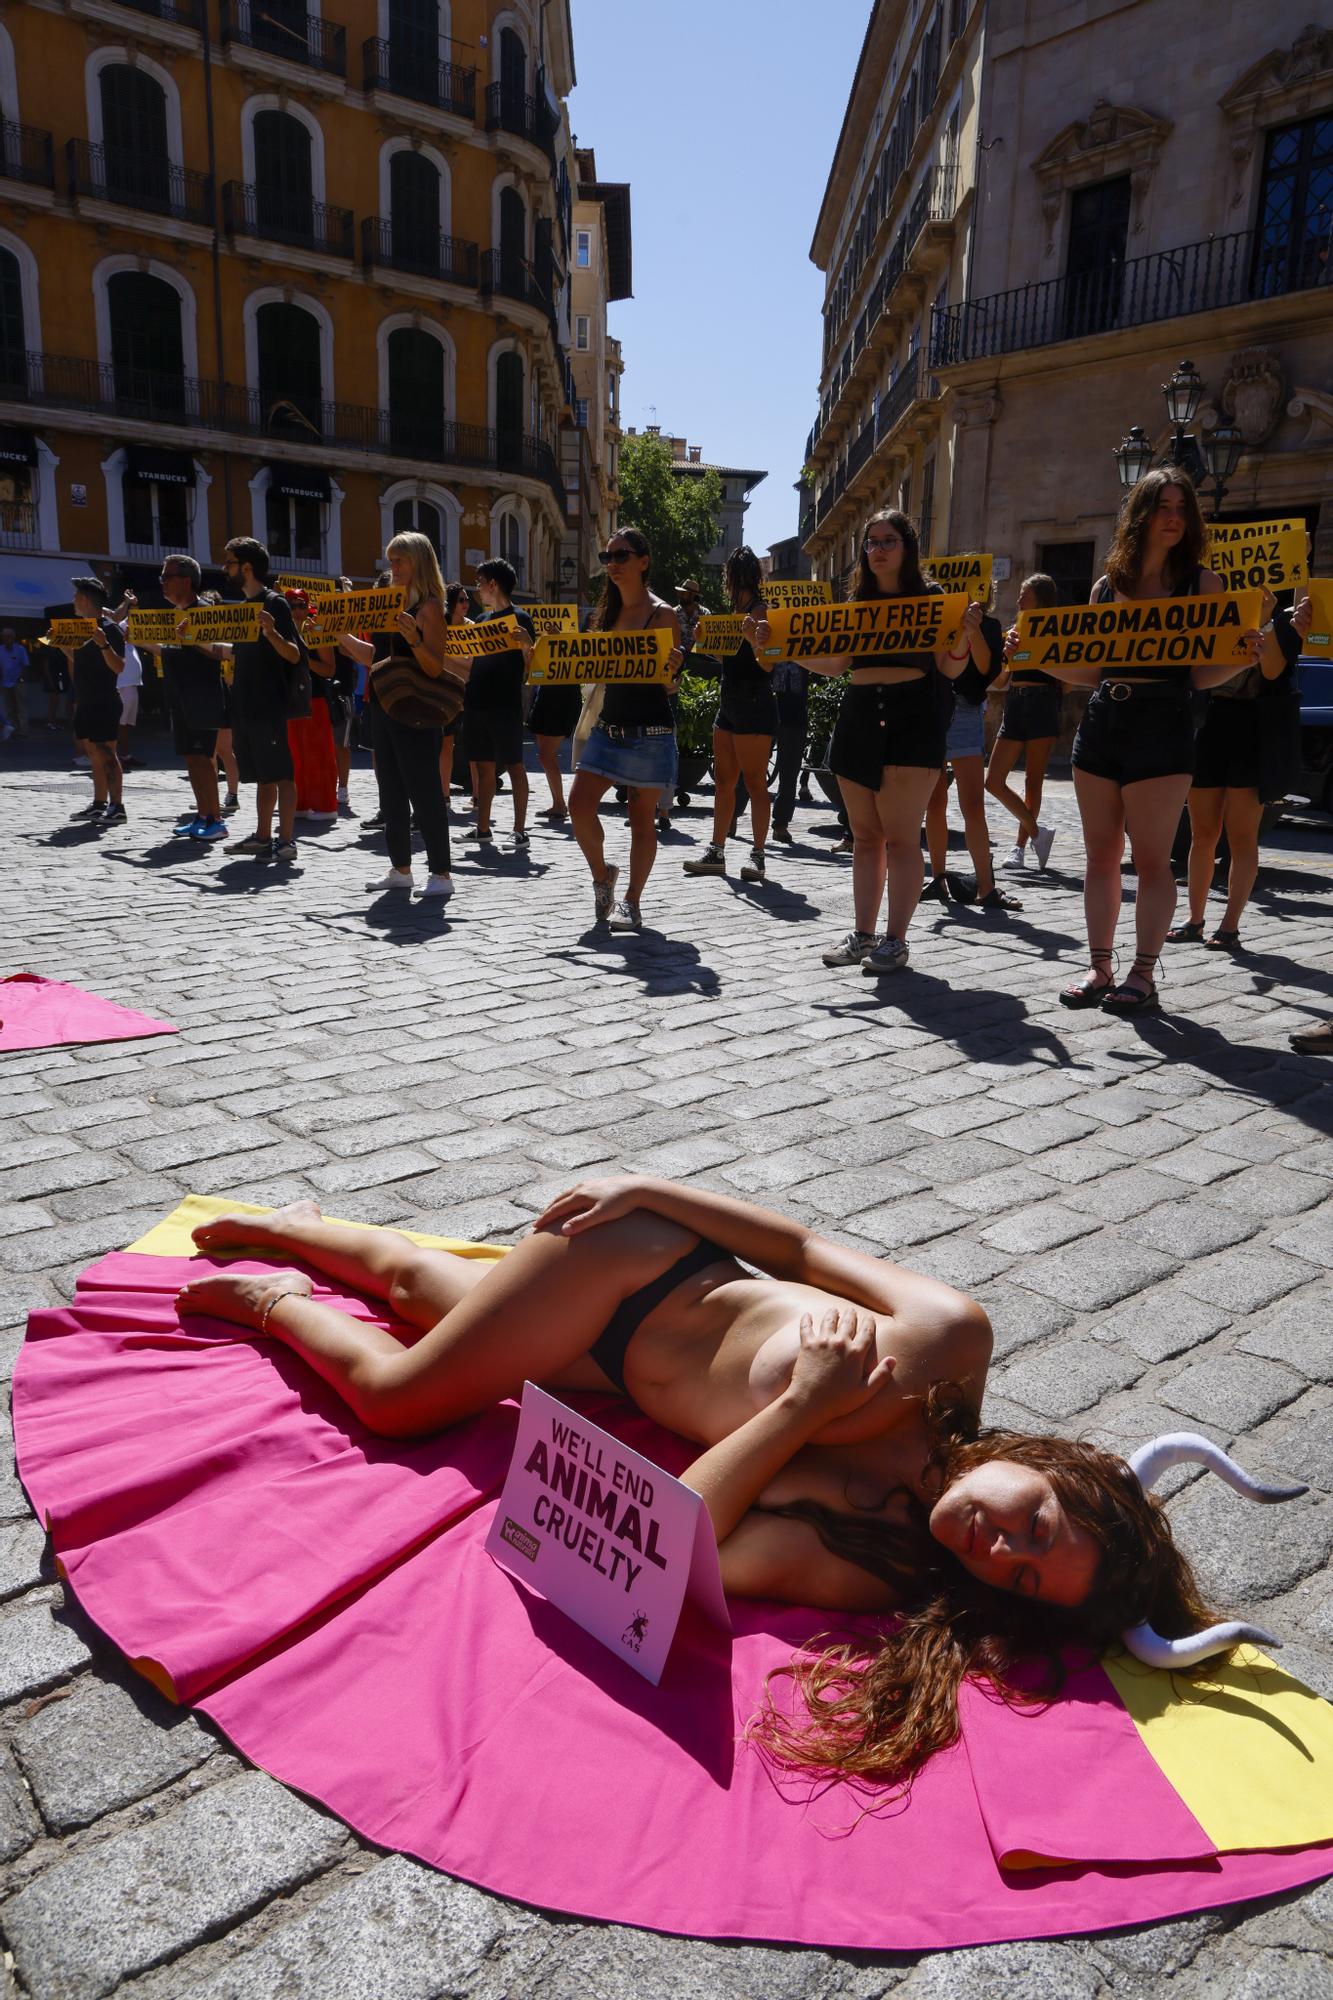 FOTOS | Activistas antitaurinos protestan en Palma contra las corridas de toros